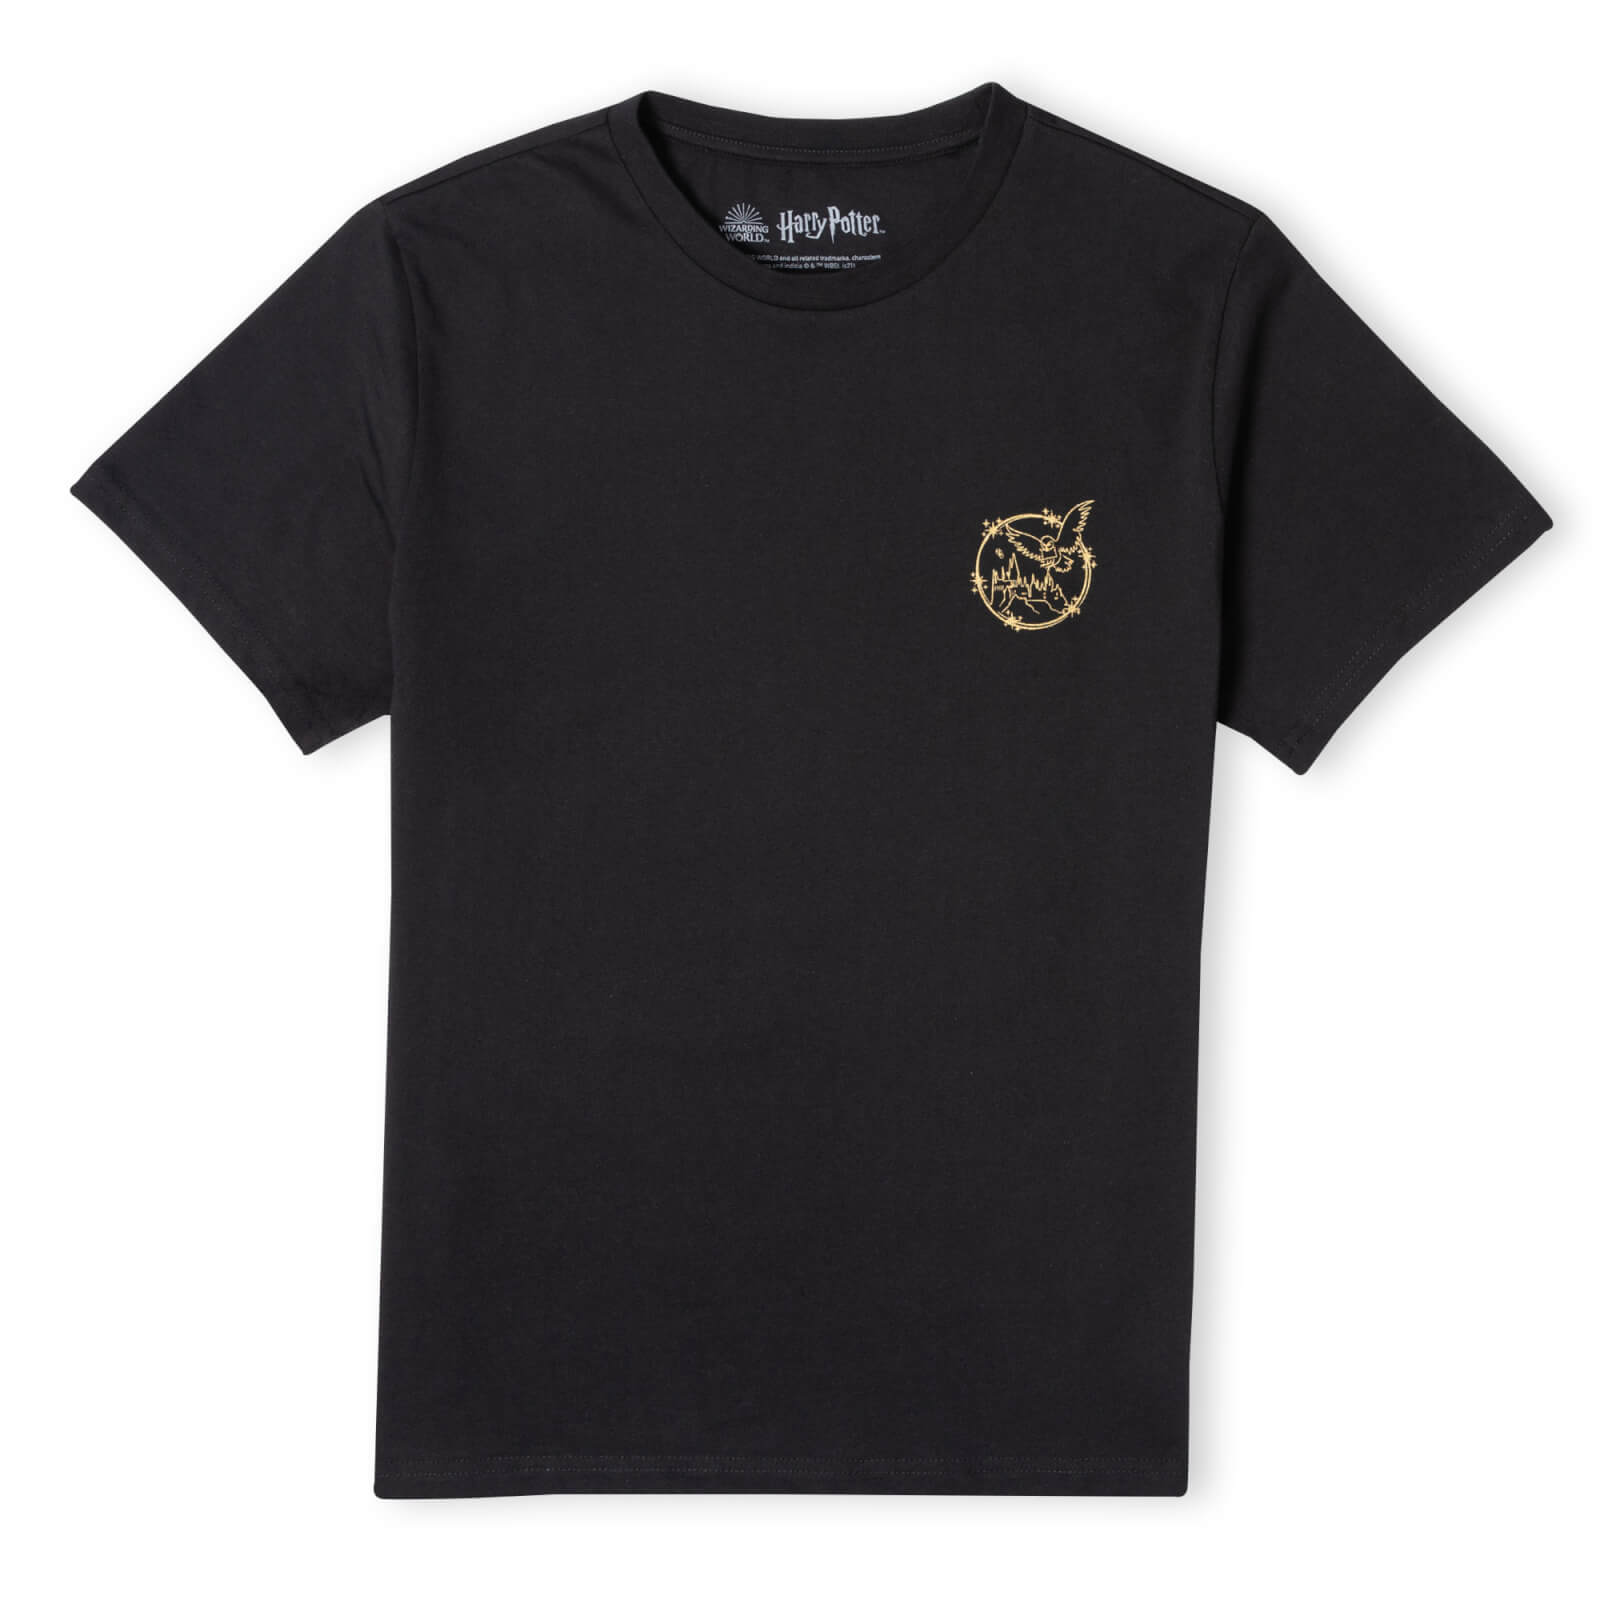 harry potter metallic pocket print men's t-shirt - black - s - nero